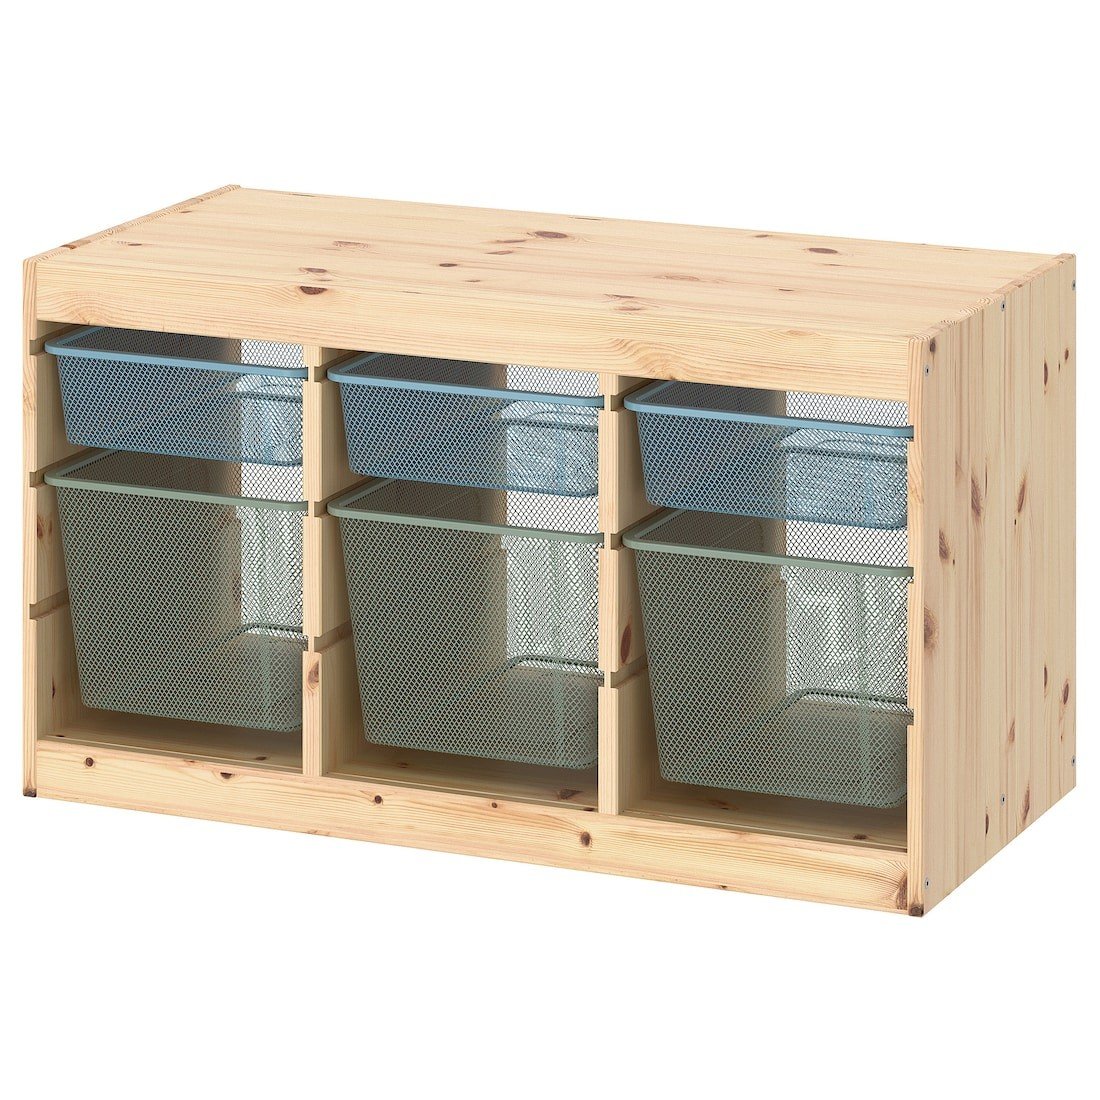 TROFAST ТРУФАСТ Комбинация для хранения + контейнеры, светлая беленая сосна серо-голубой / светлый зелено-серый, 93x44x52 cм